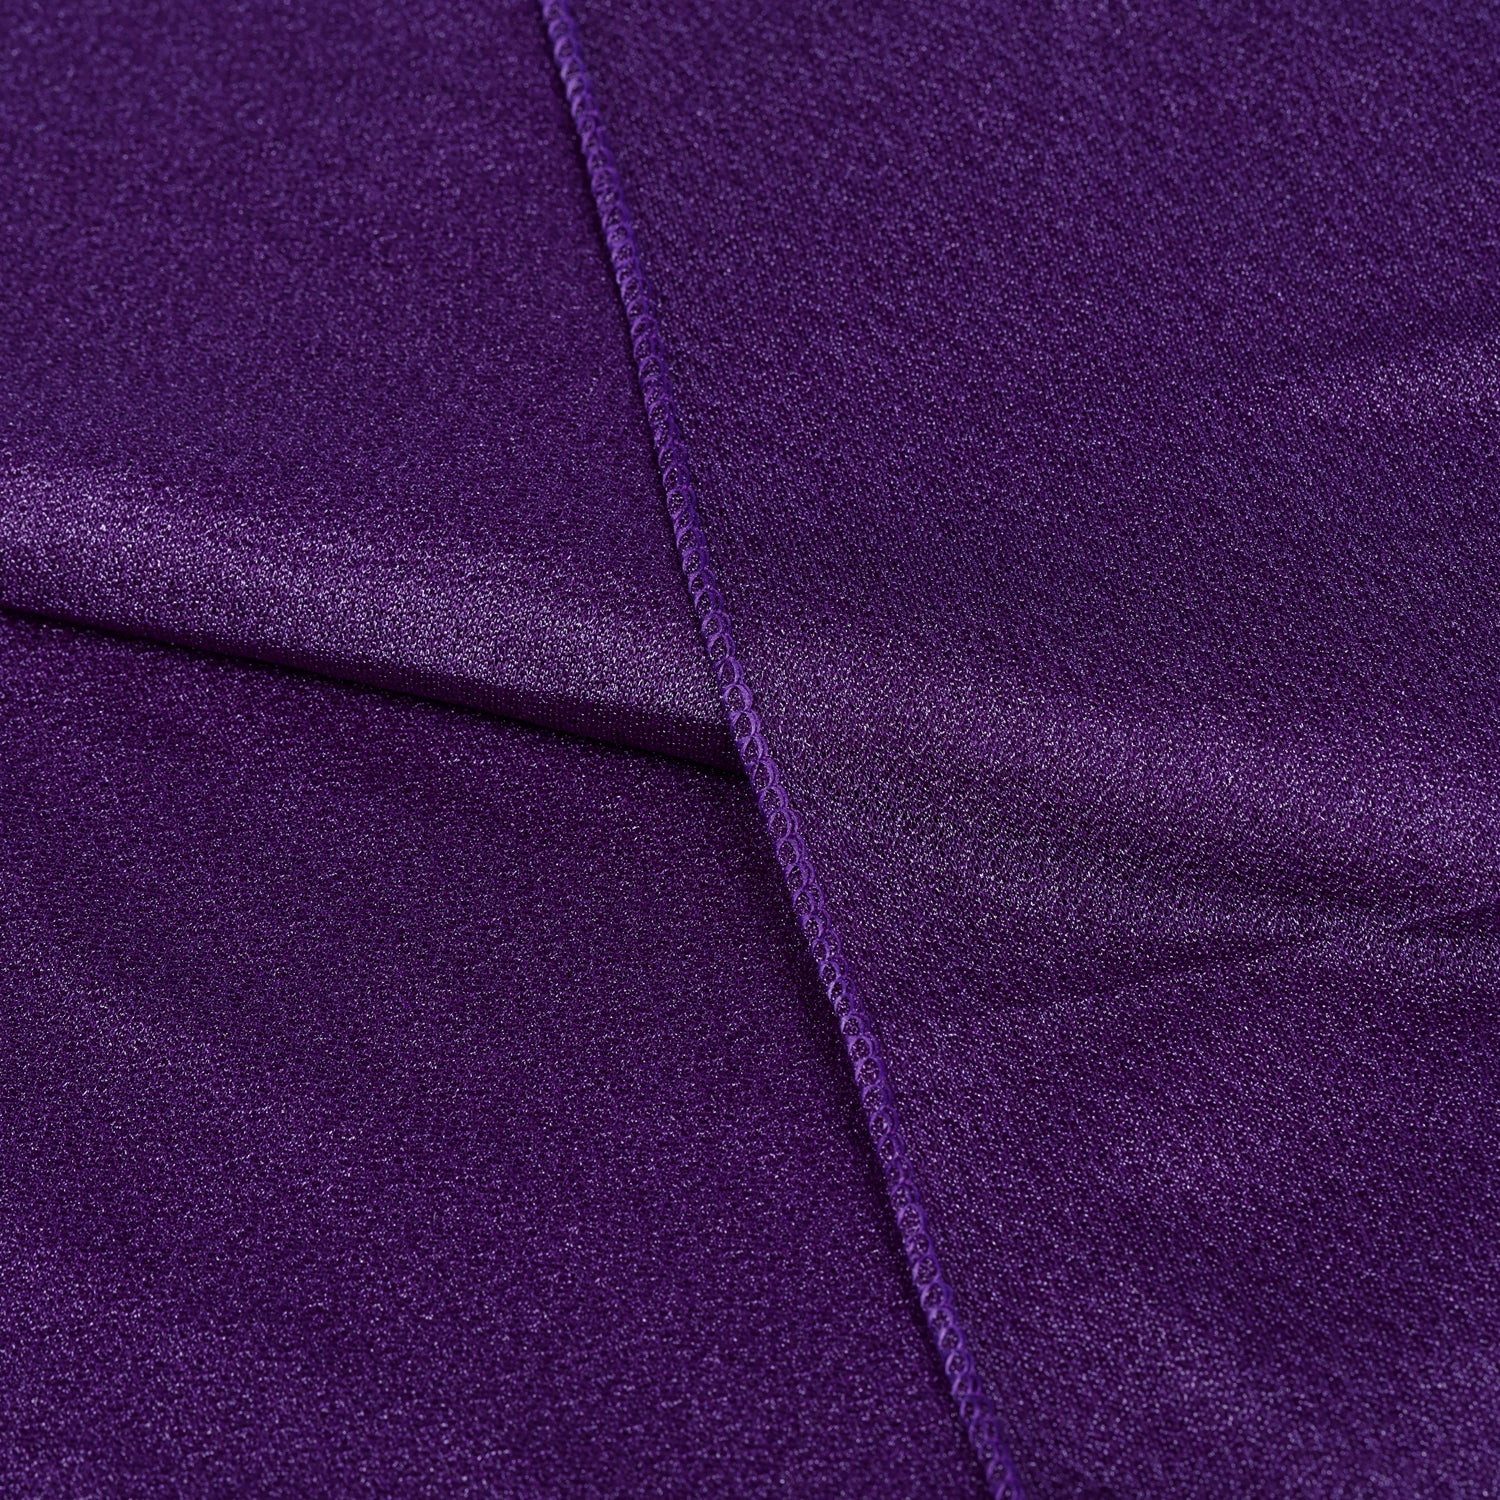 Purple,180999bb-7010-4e1f-a166-67886ff17050